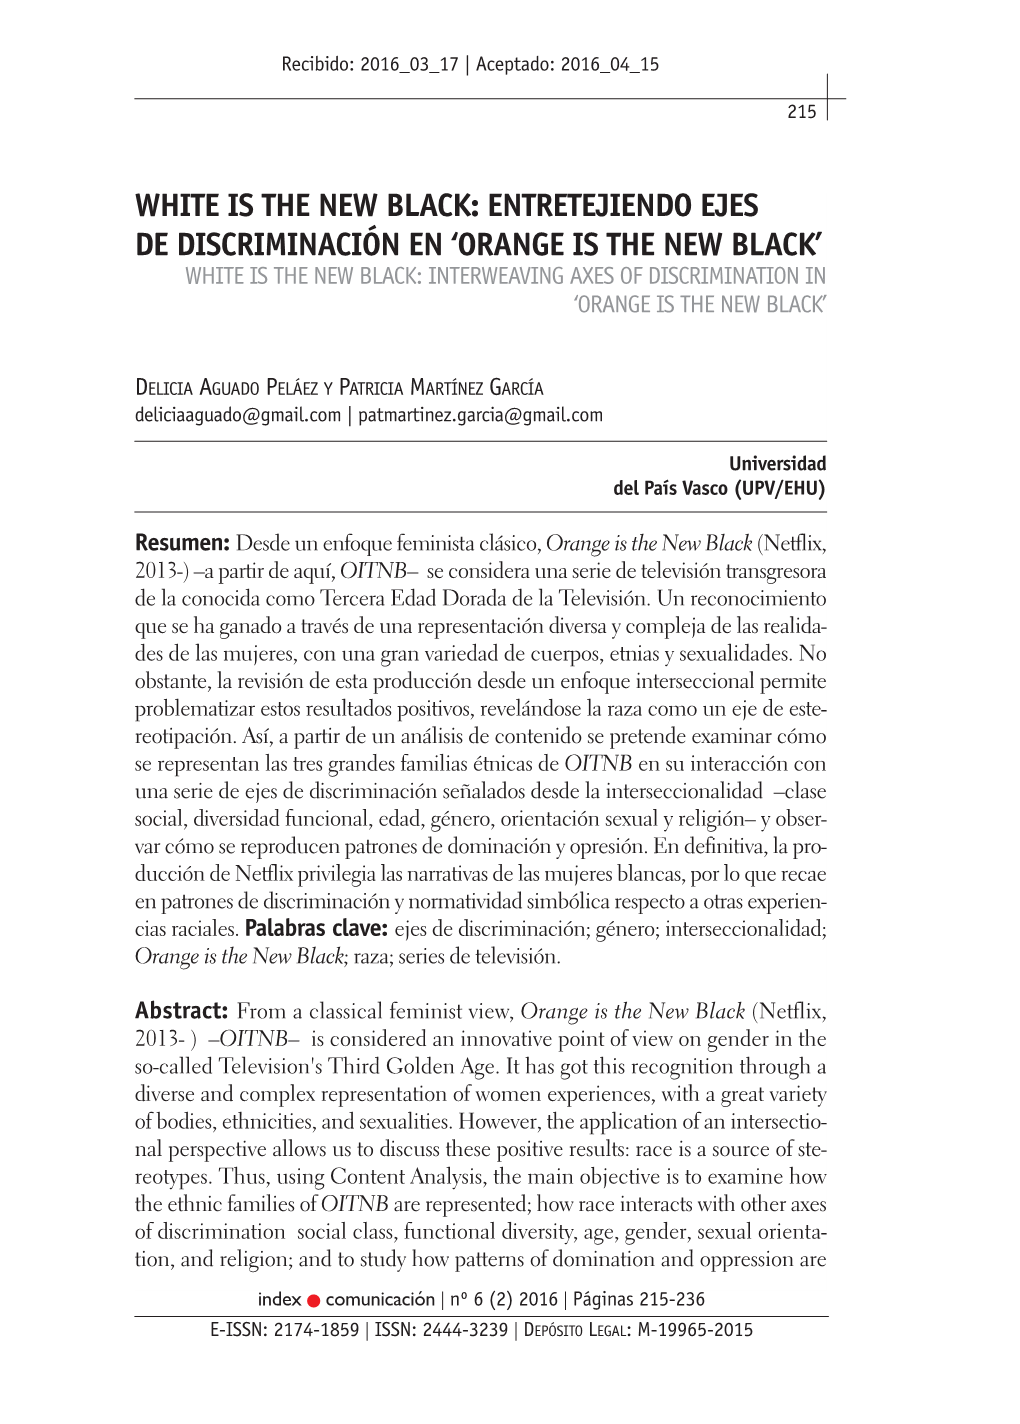 White Is the New Black: Entretejiendo Ejes De Discriminación En 'Orange Is the New Black'